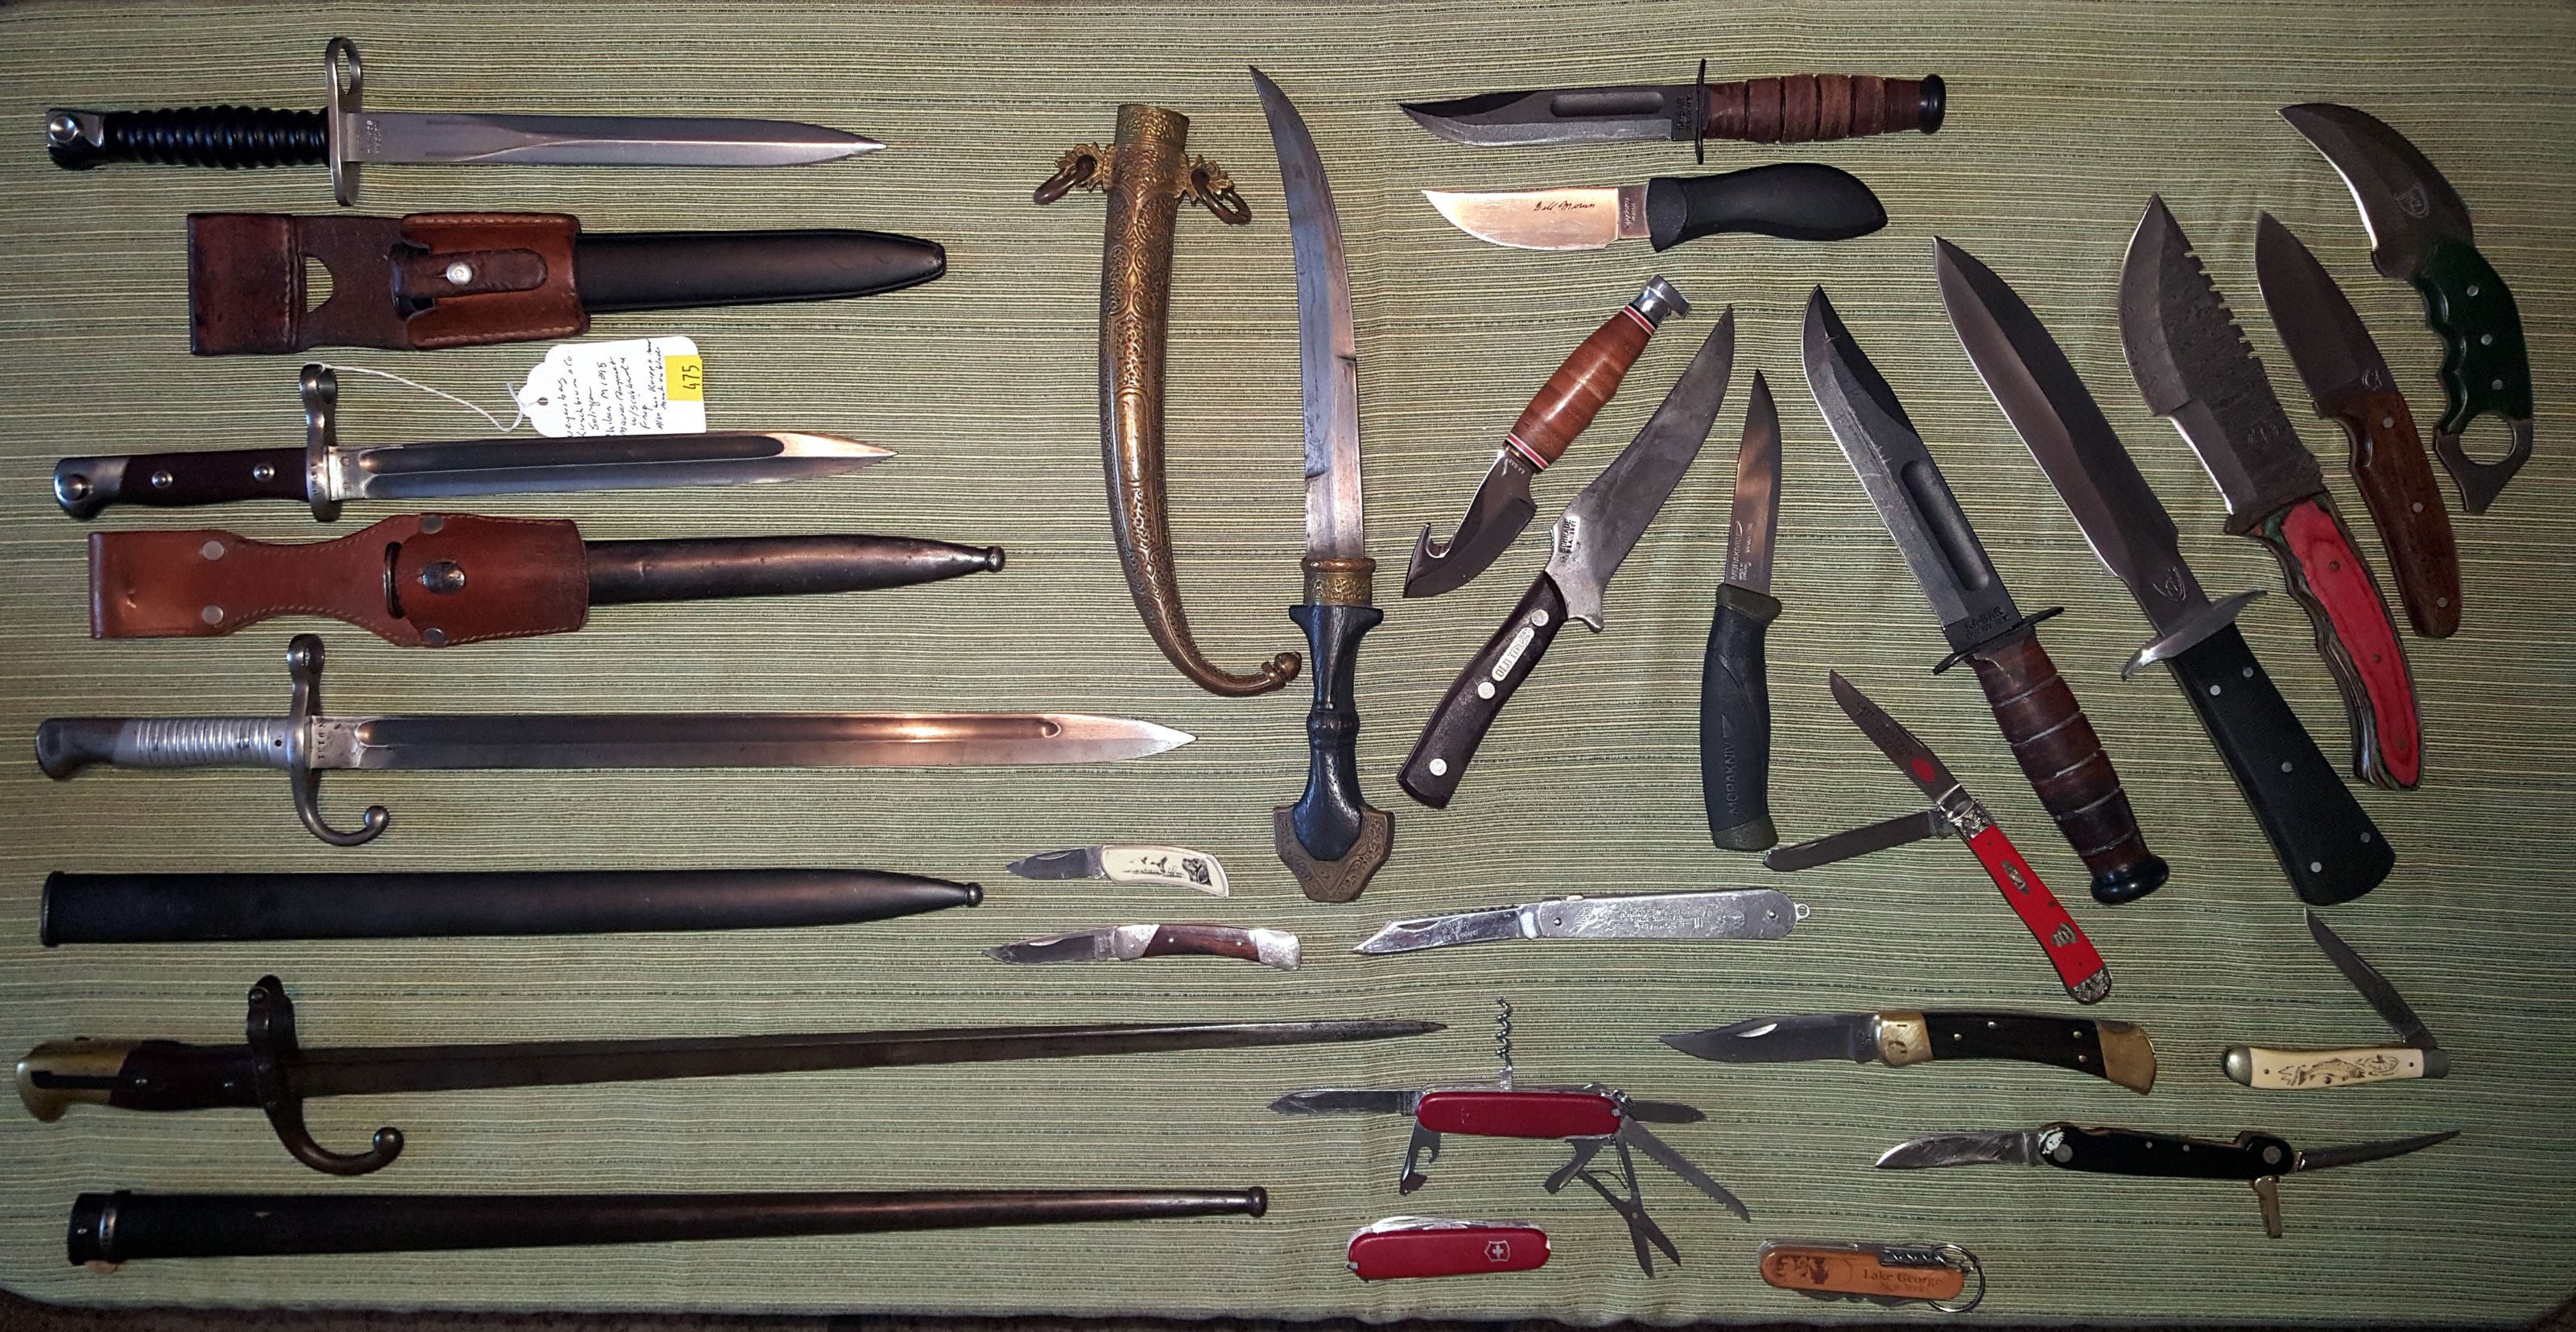 most knives.jpg